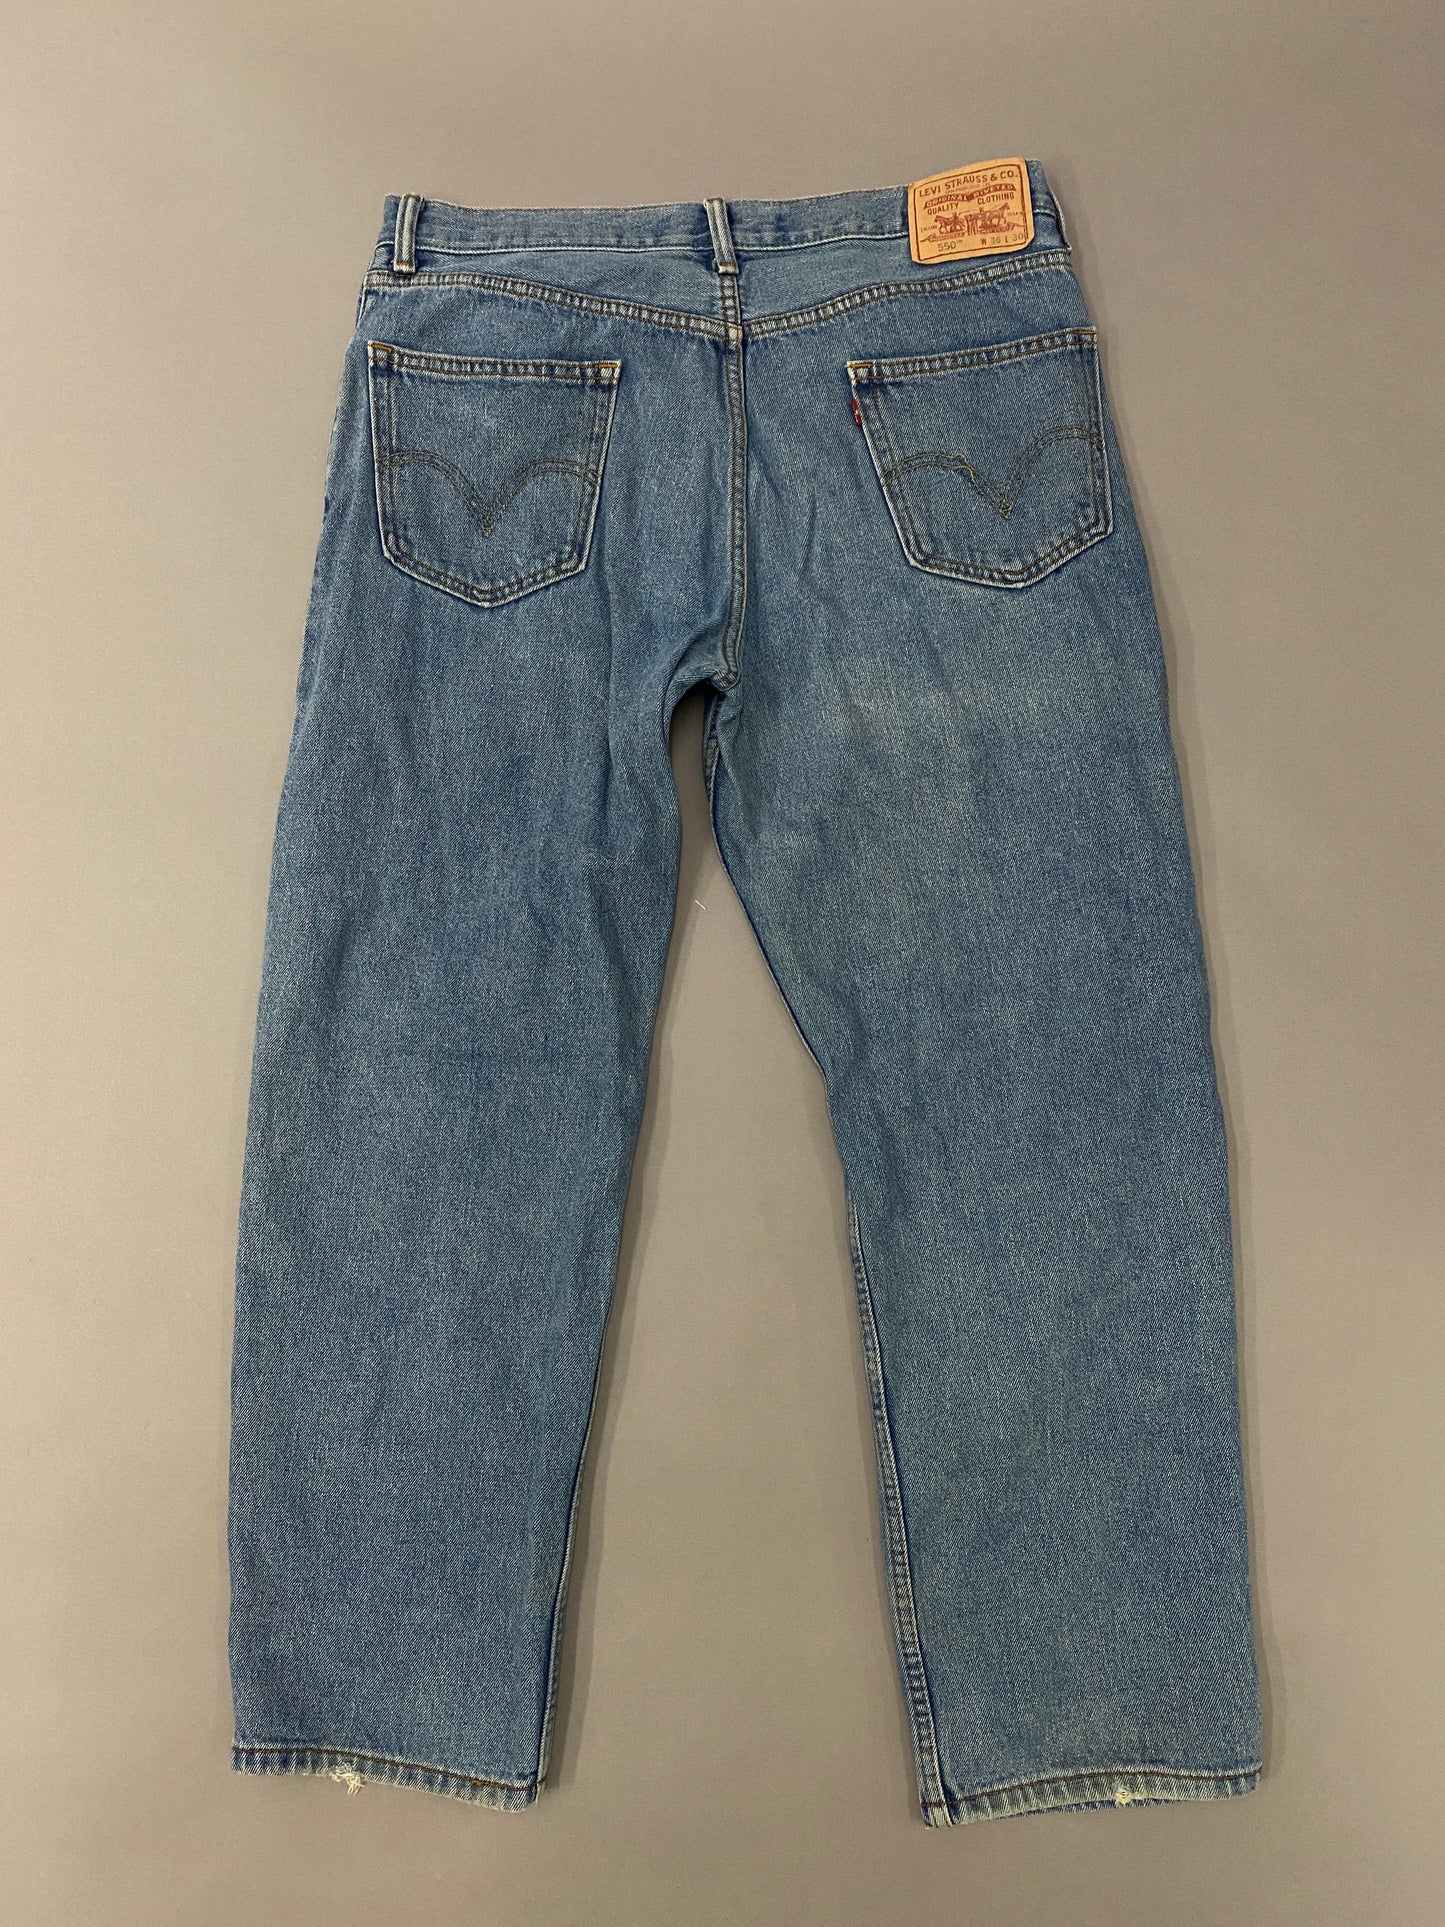 Jeans Levi's 550 - 36 x 30